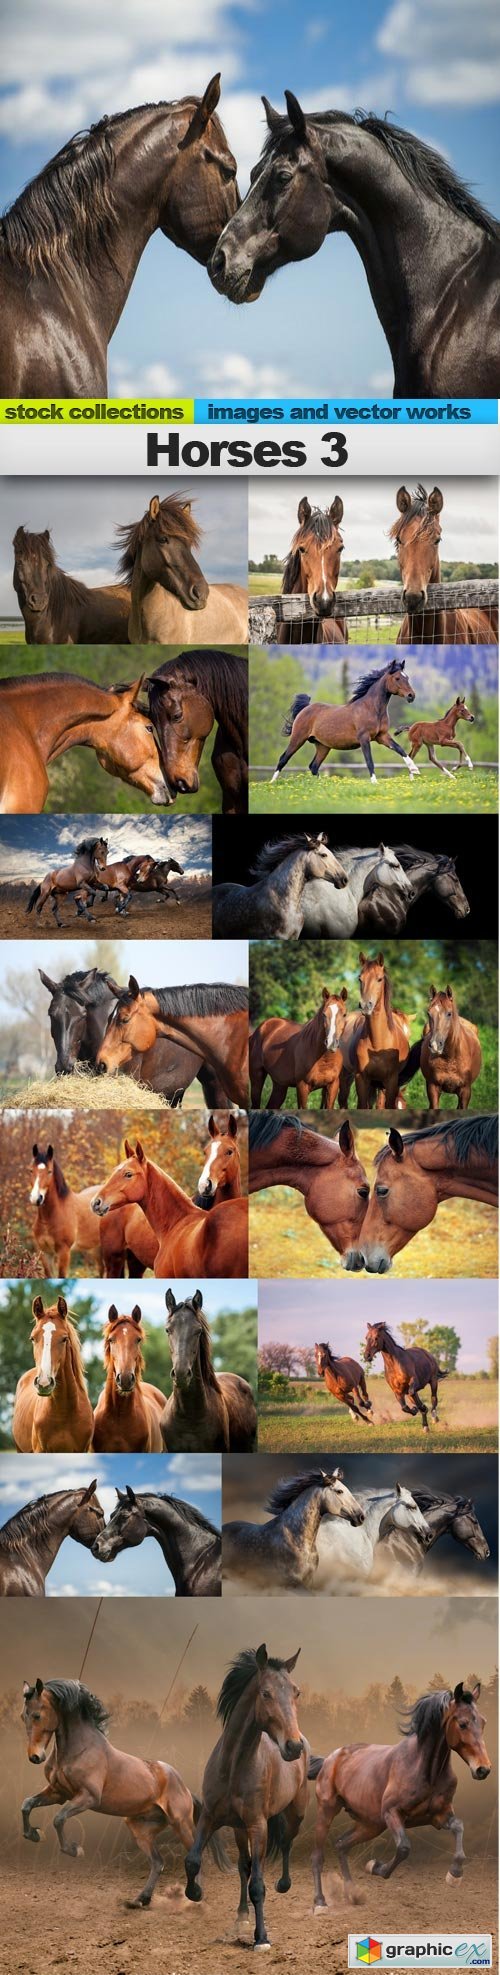 Horses 3, 15 x UHQ JPEG